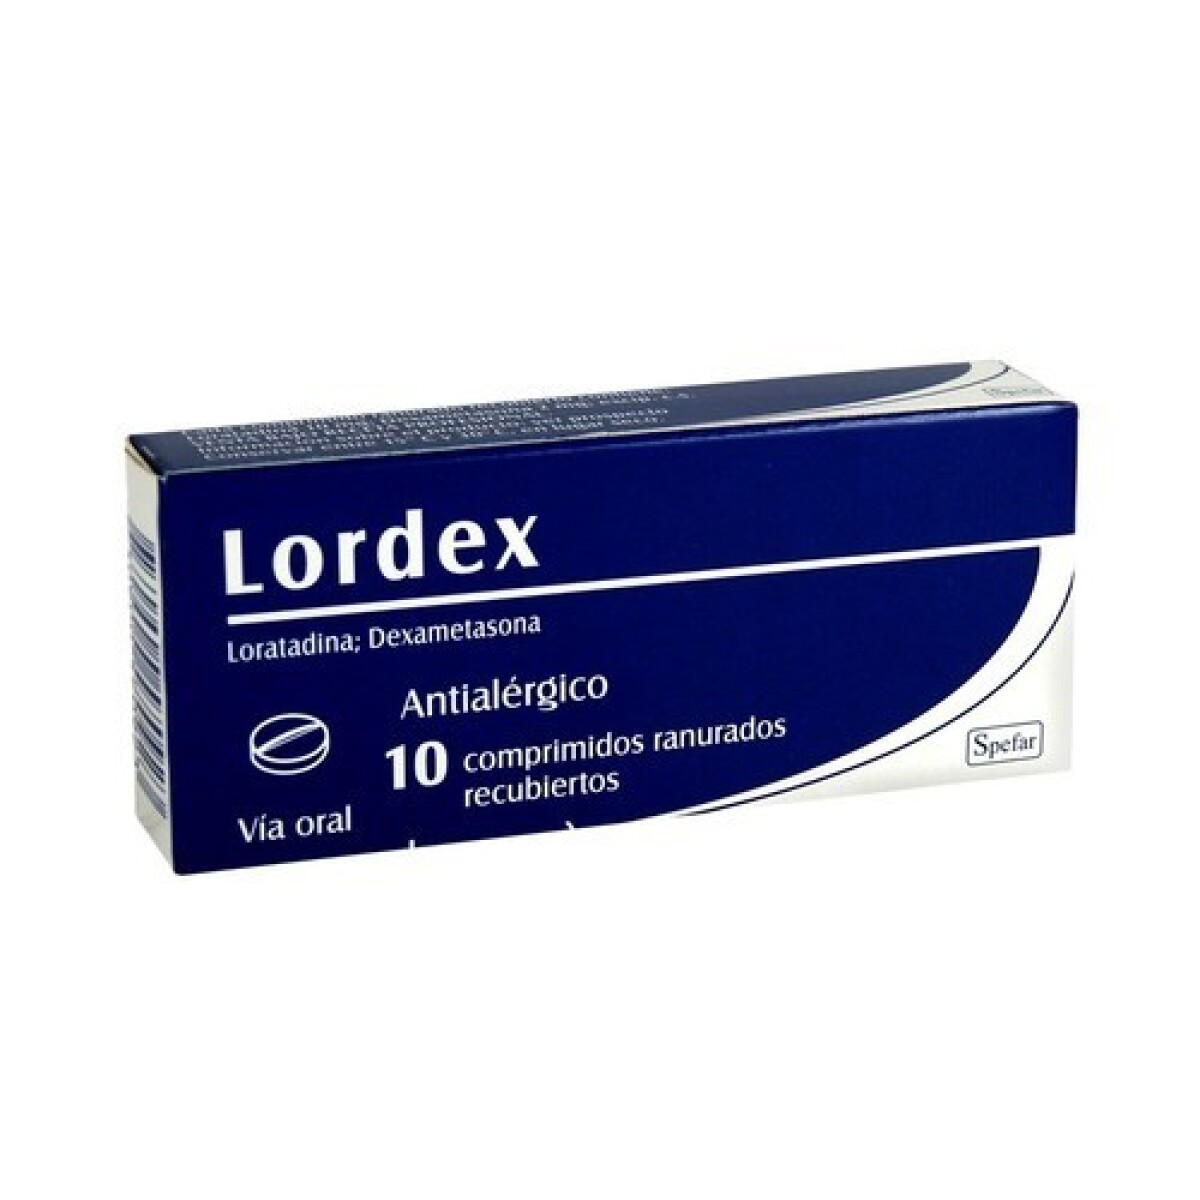 Lordex antialérgico - X10 Comprimidos 